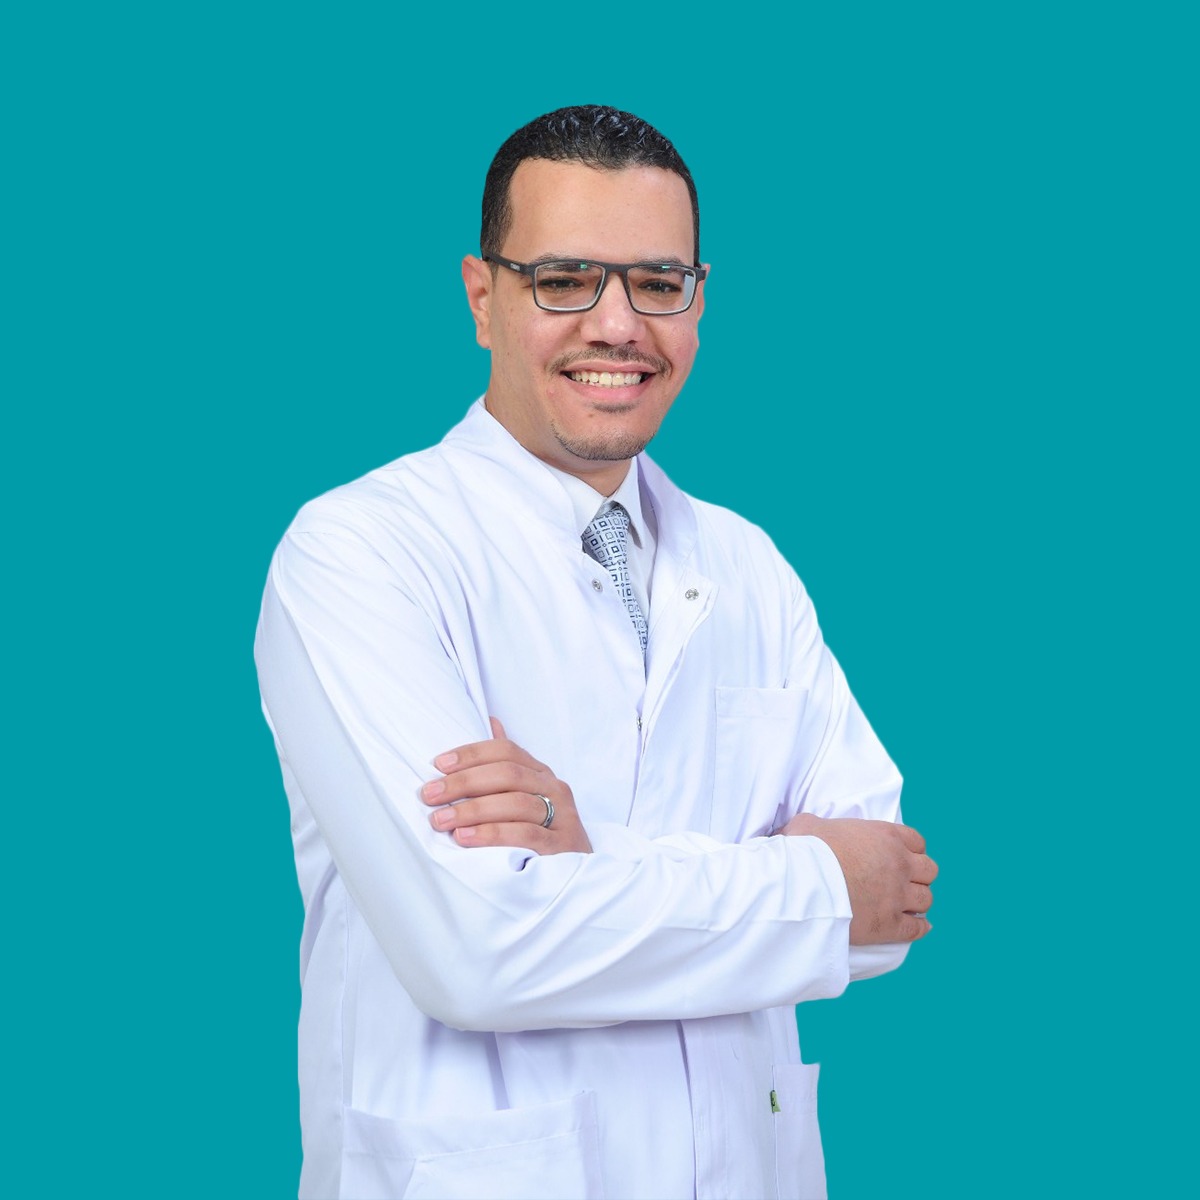 Dr. Abdel-Rahman Ali